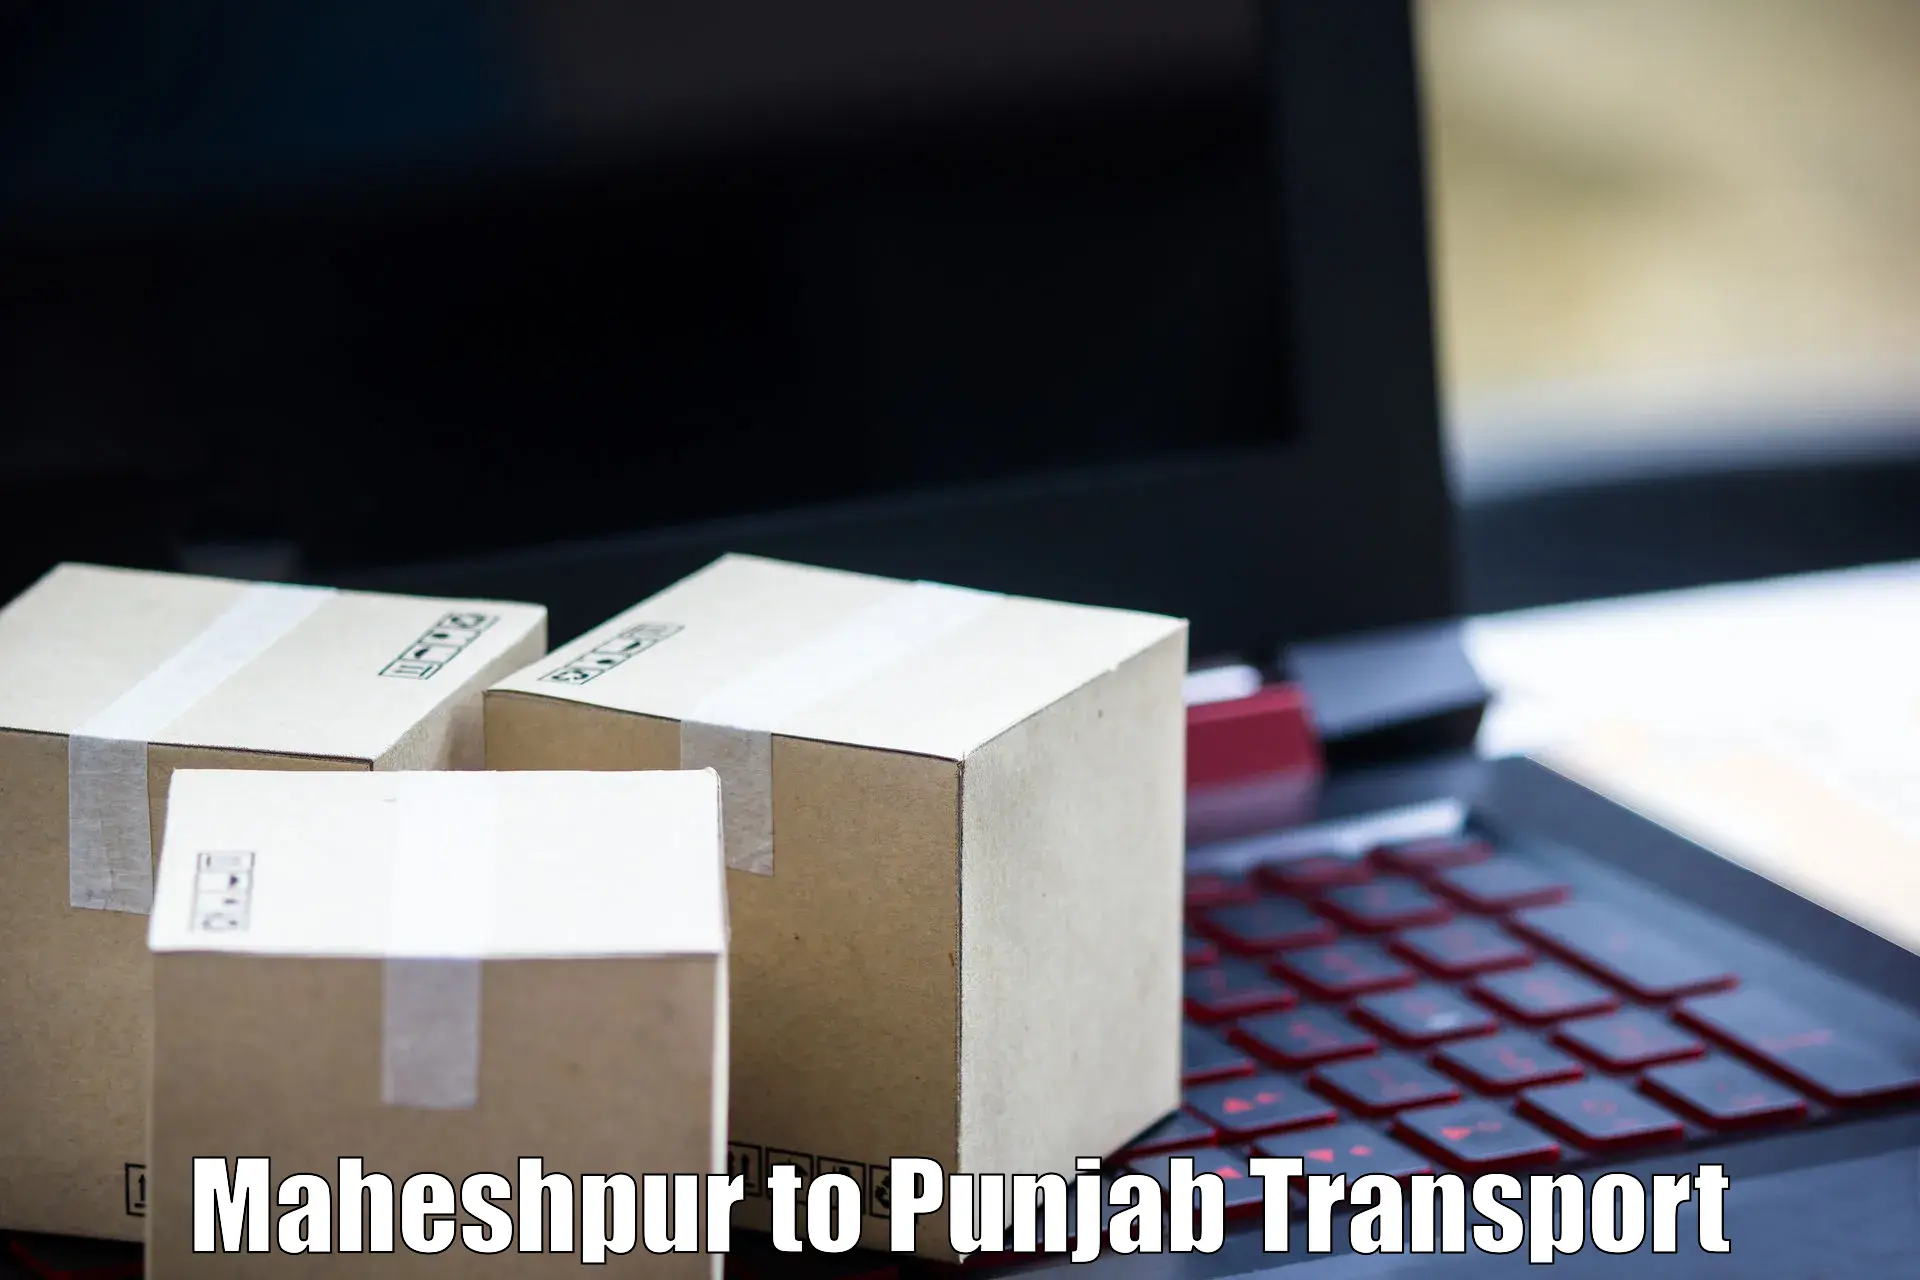 All India transport service Maheshpur to Mohali